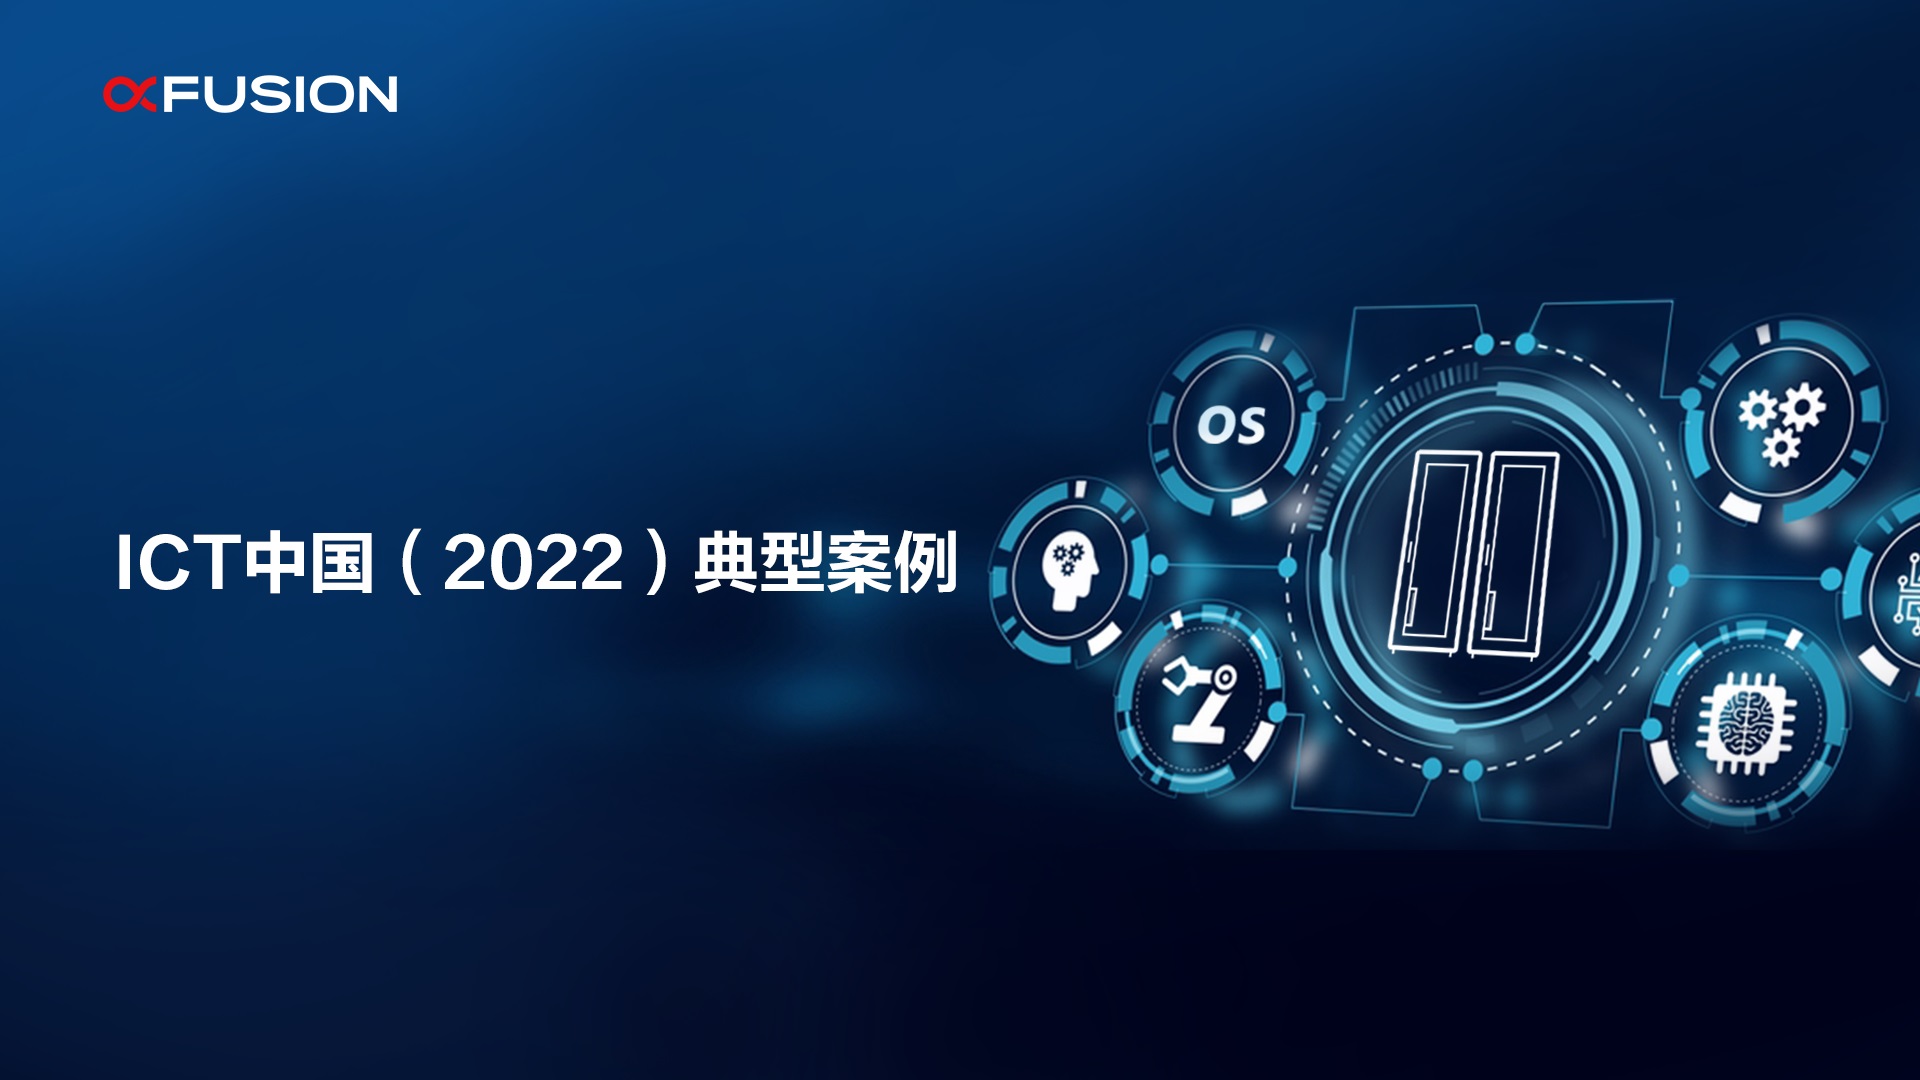 超聚变荣获“ICT中国（2022）典型案例”创新应用类两项大奖